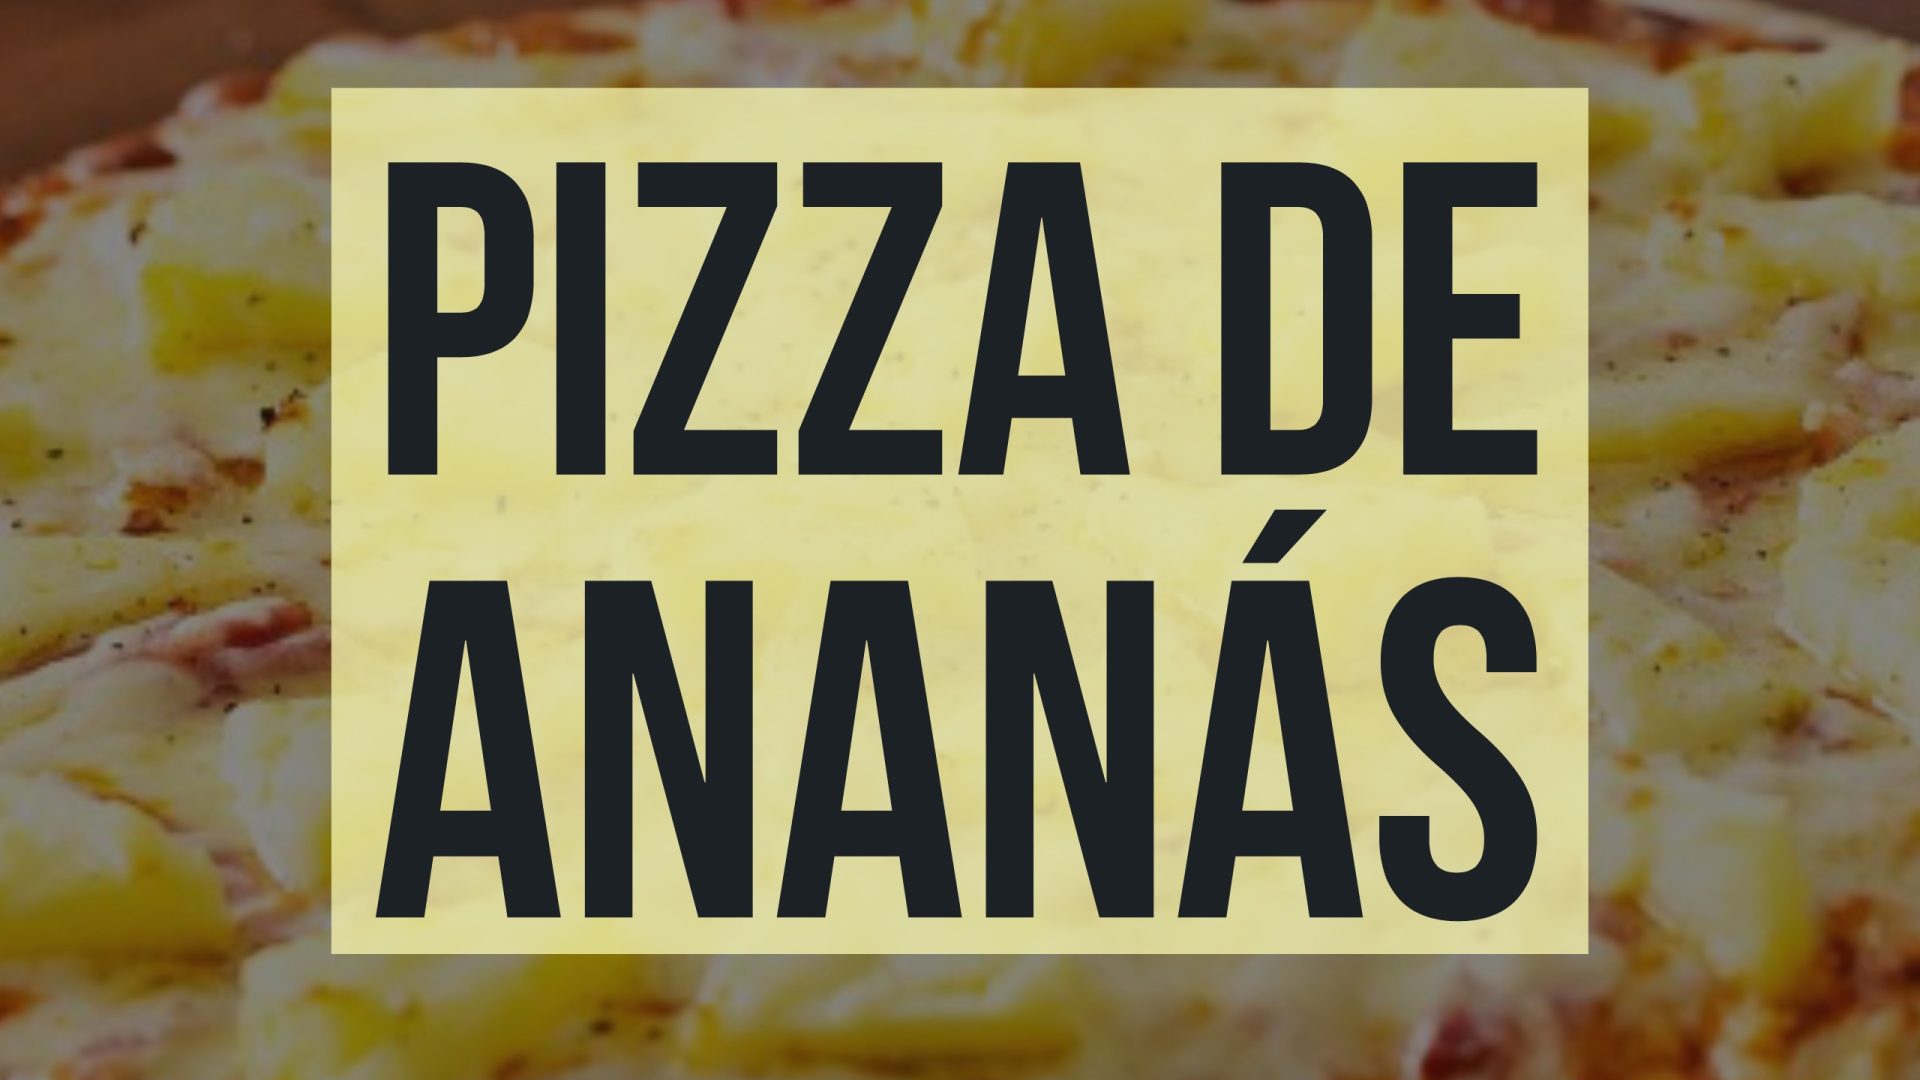 Isto é Sério: Pizza de Ananás